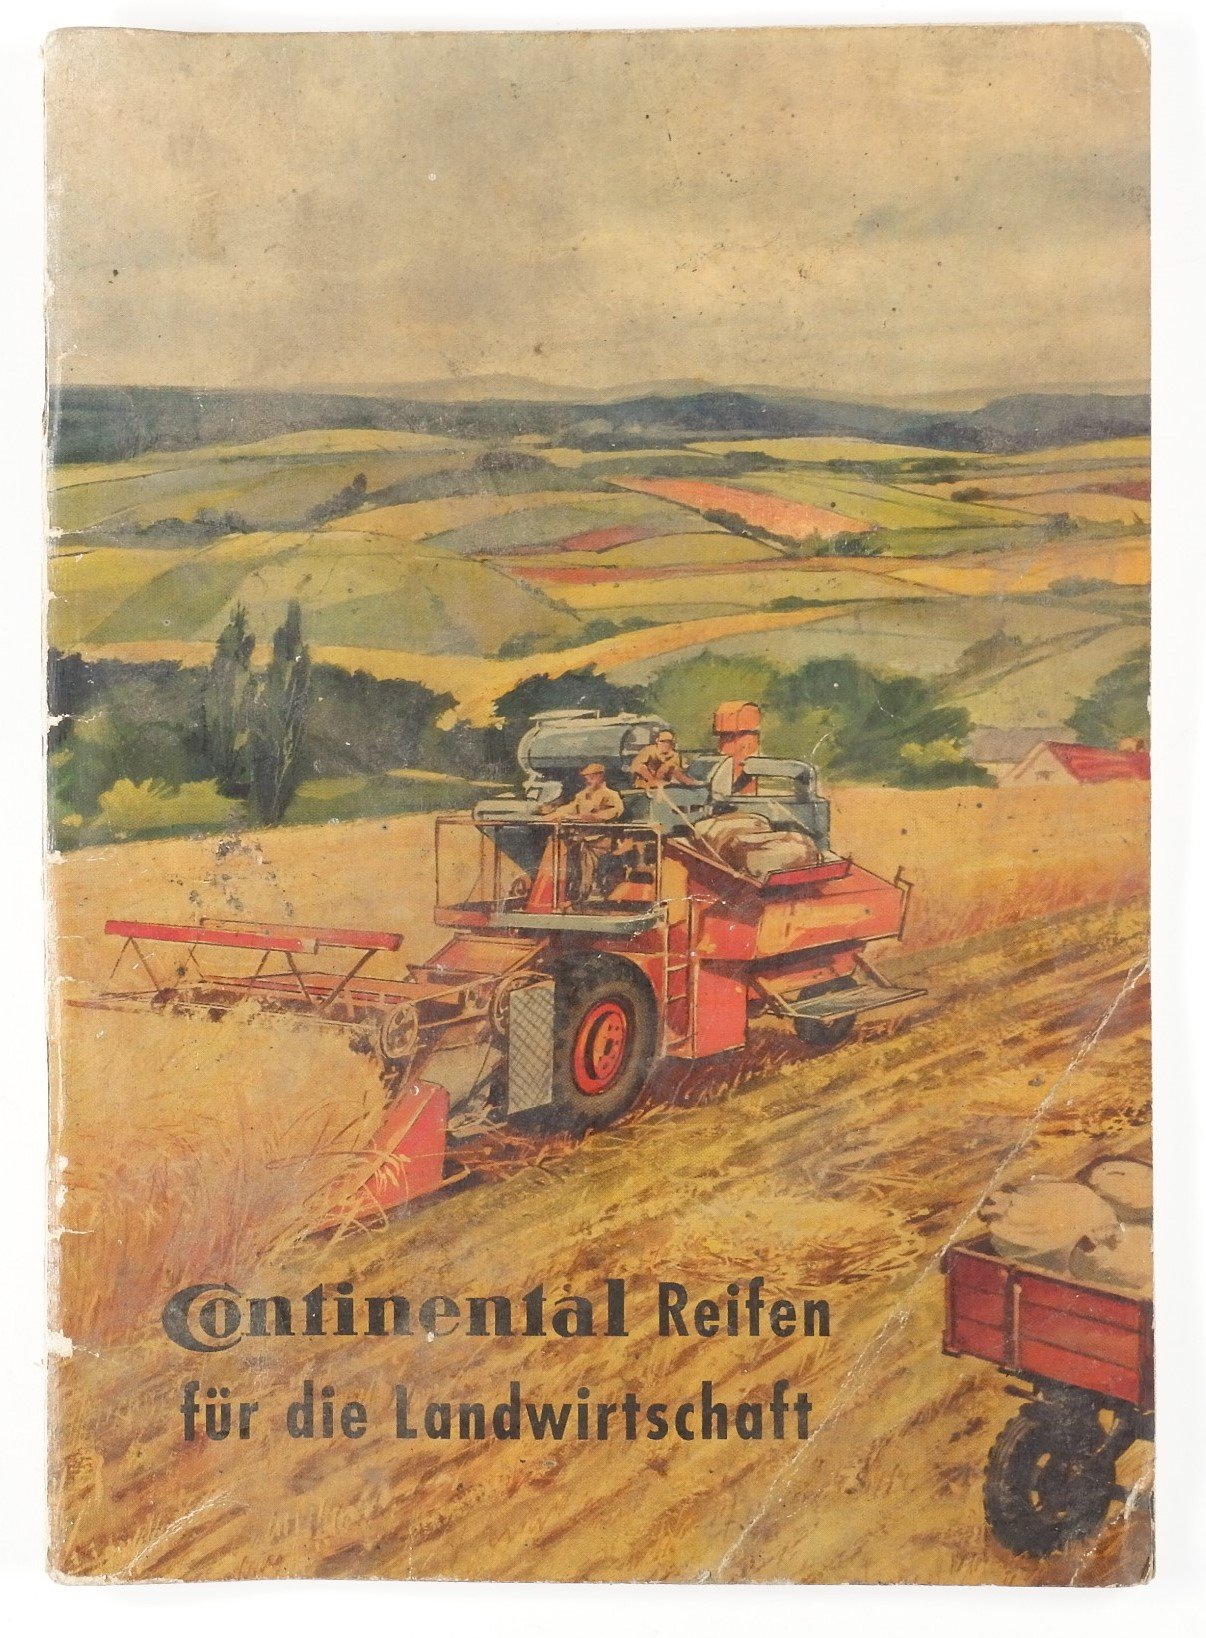 Continental Reifen für die Landwirtschaft (Volkskunde- und Freilichtmuseum Roscheider Hof RR-F)